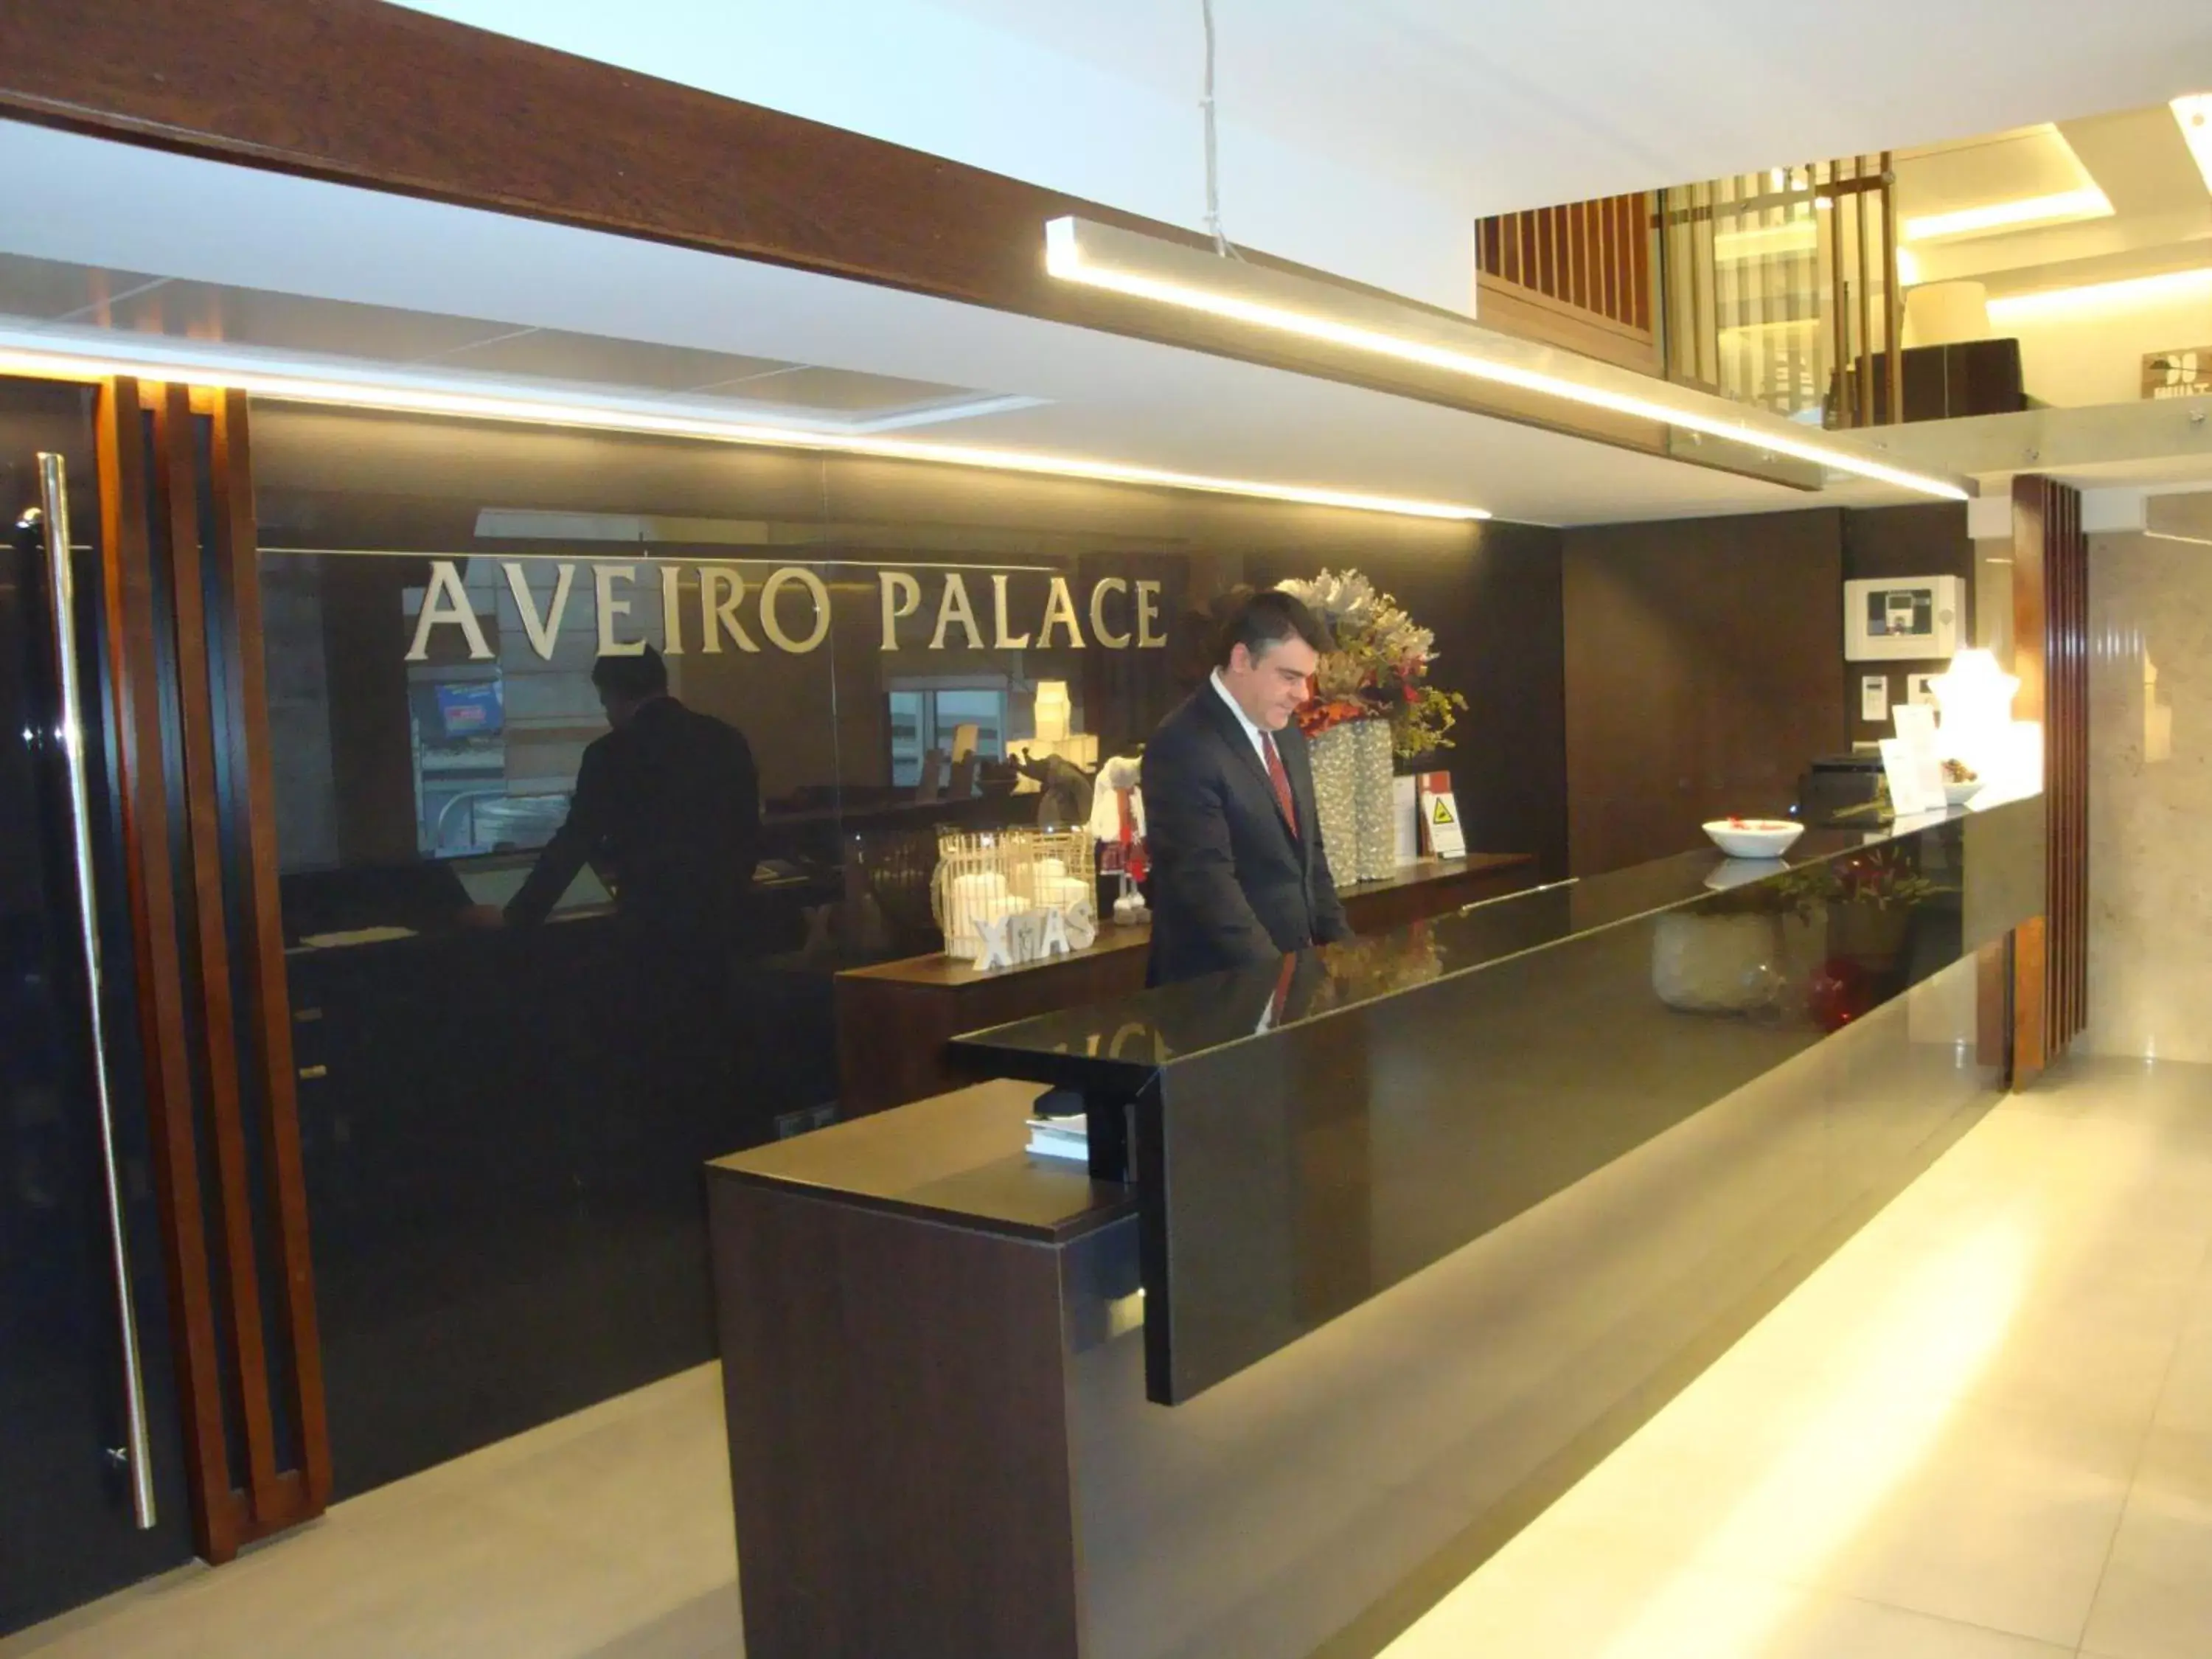 Lobby/Reception in Hotel Aveiro Palace